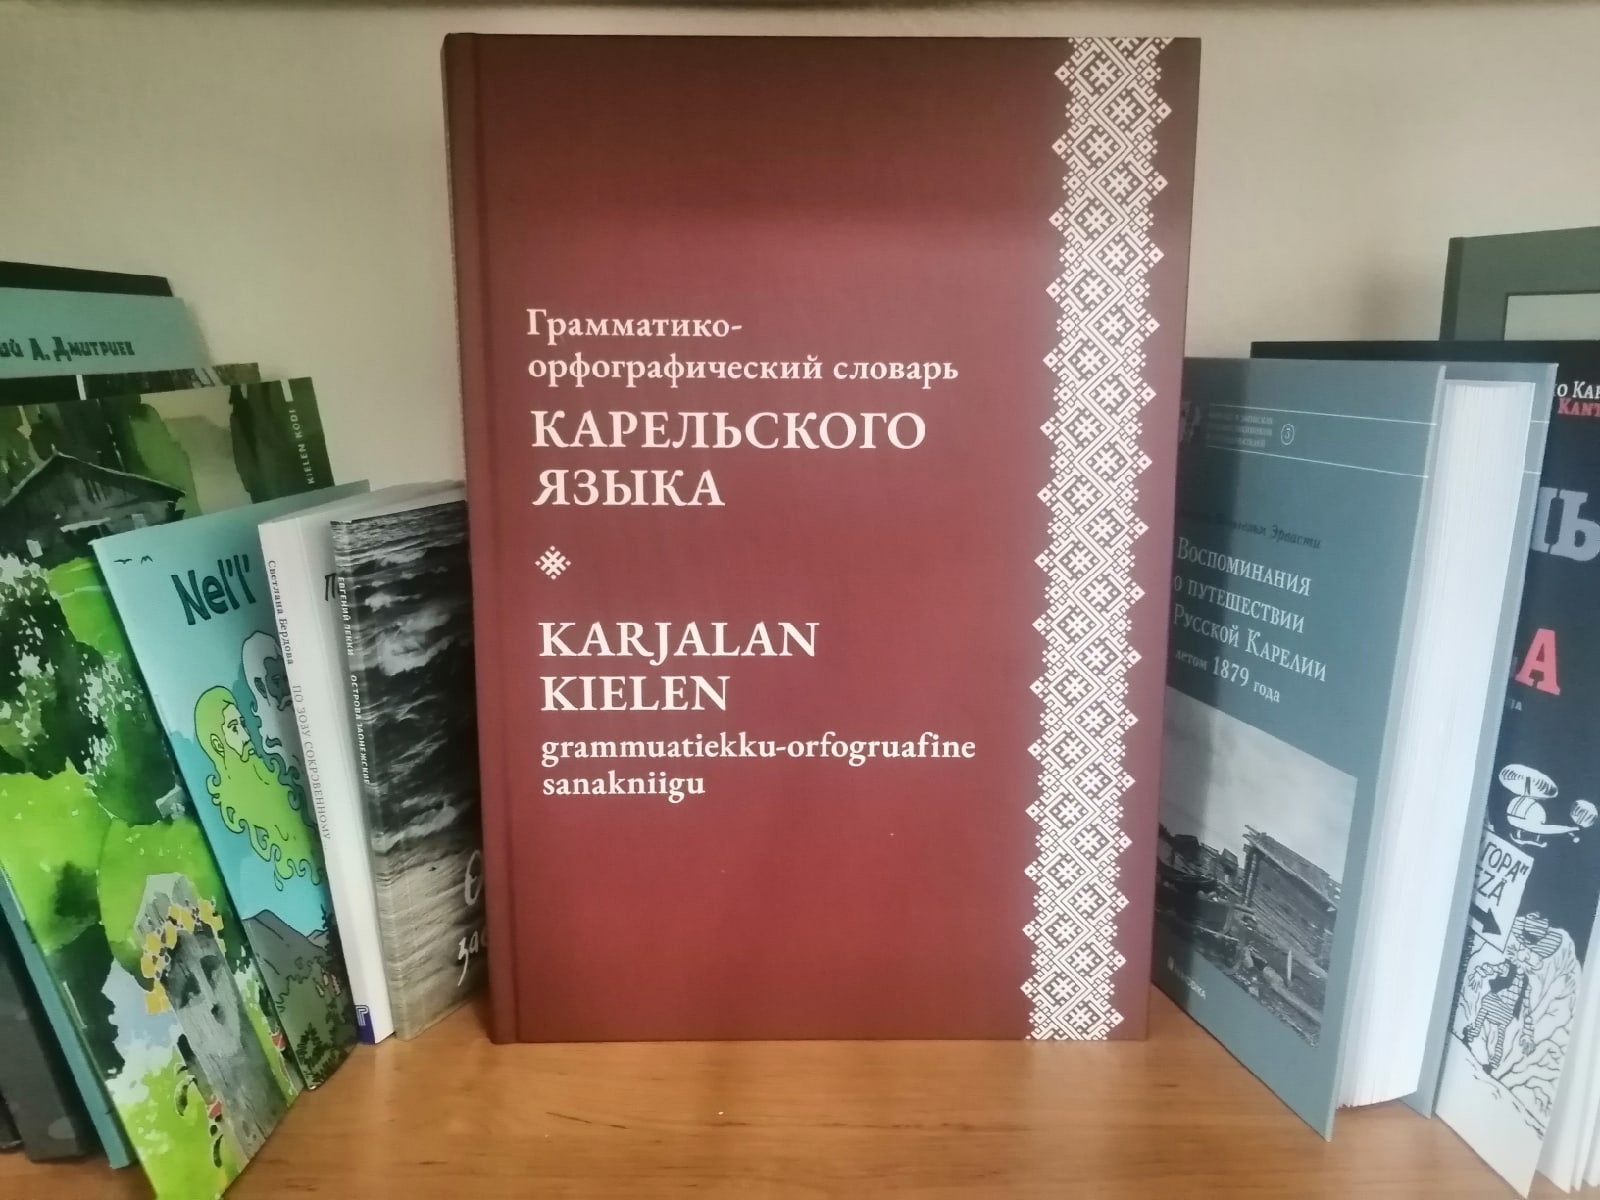 Uudesta sanakirjasta löytyy suuri määrä yhdyssanoja, jotka puuttuvat muista sanakirjoista. 0+. Kuva: Anna Umberg